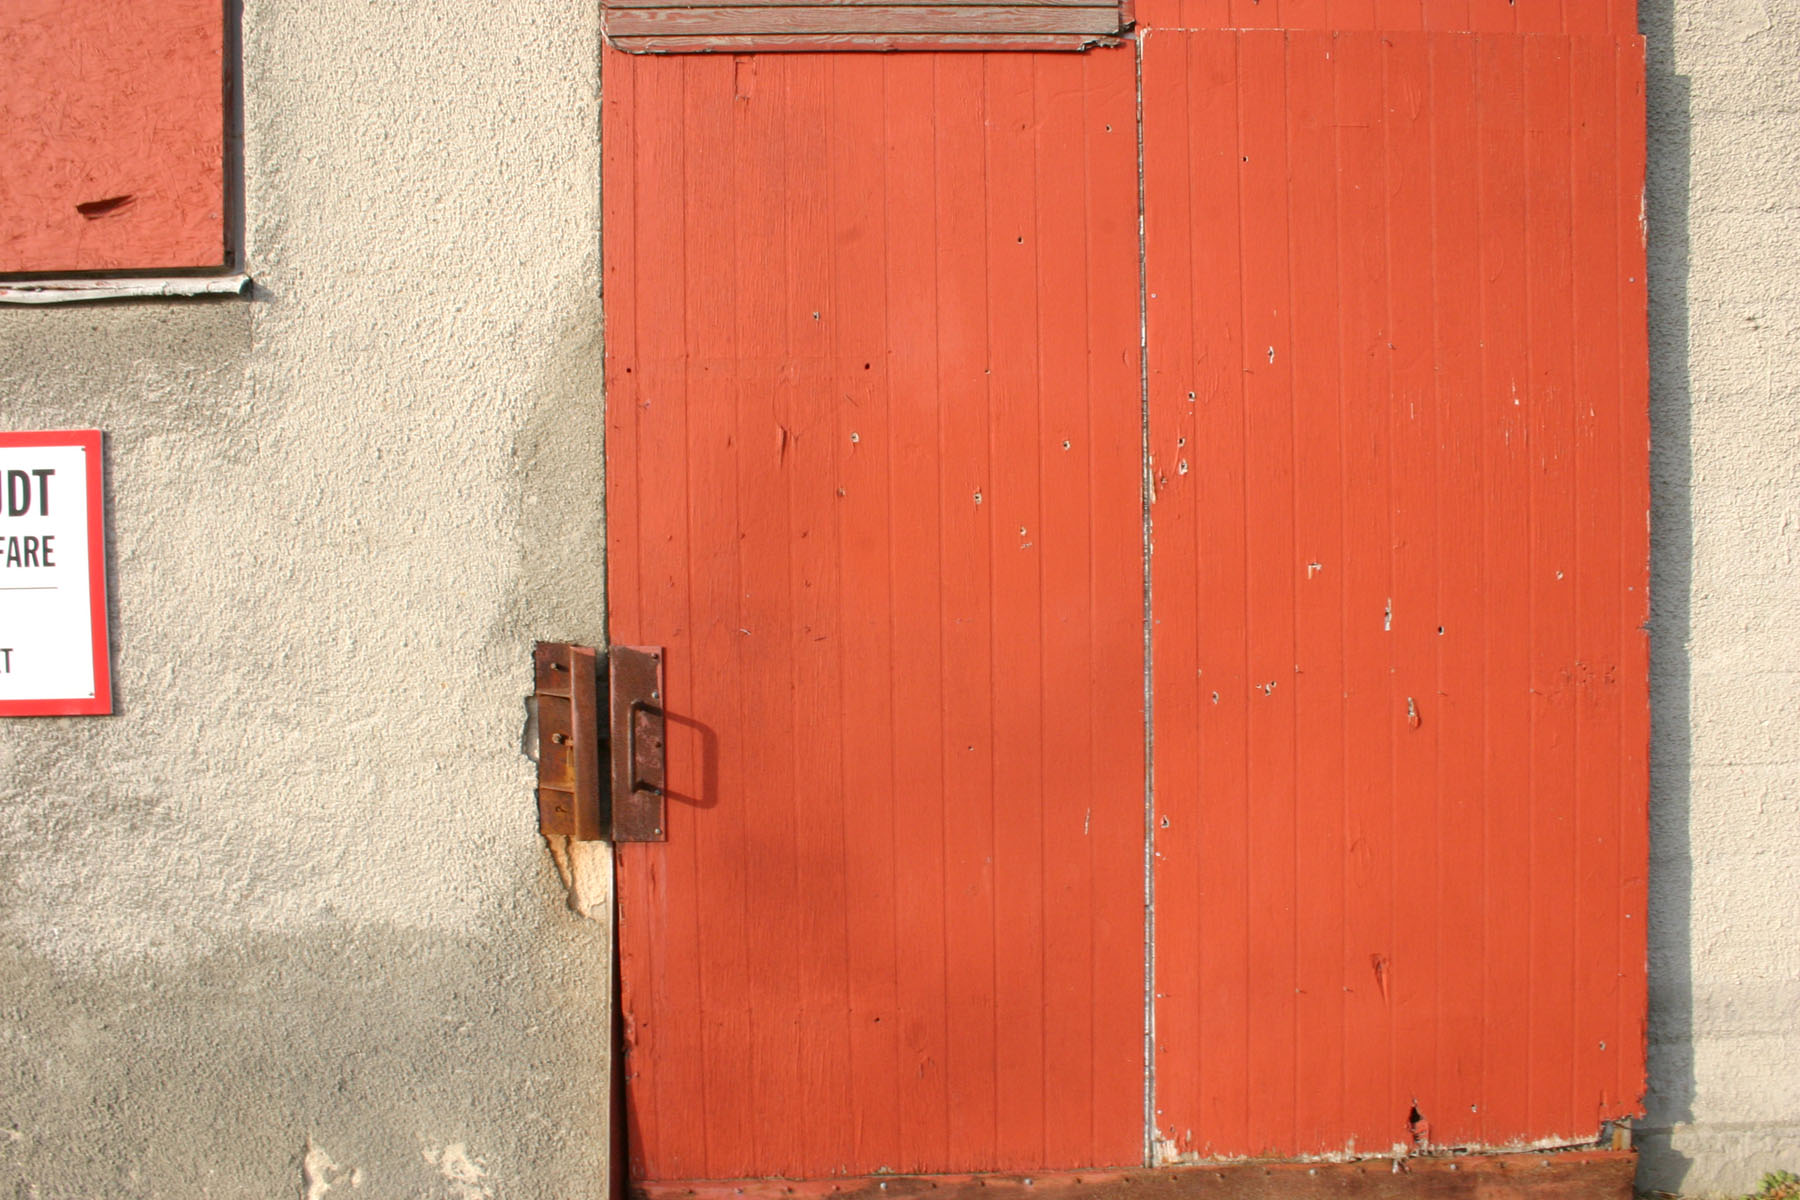 Wooden door, Door, Old, Orange, Rusty, HQ Photo